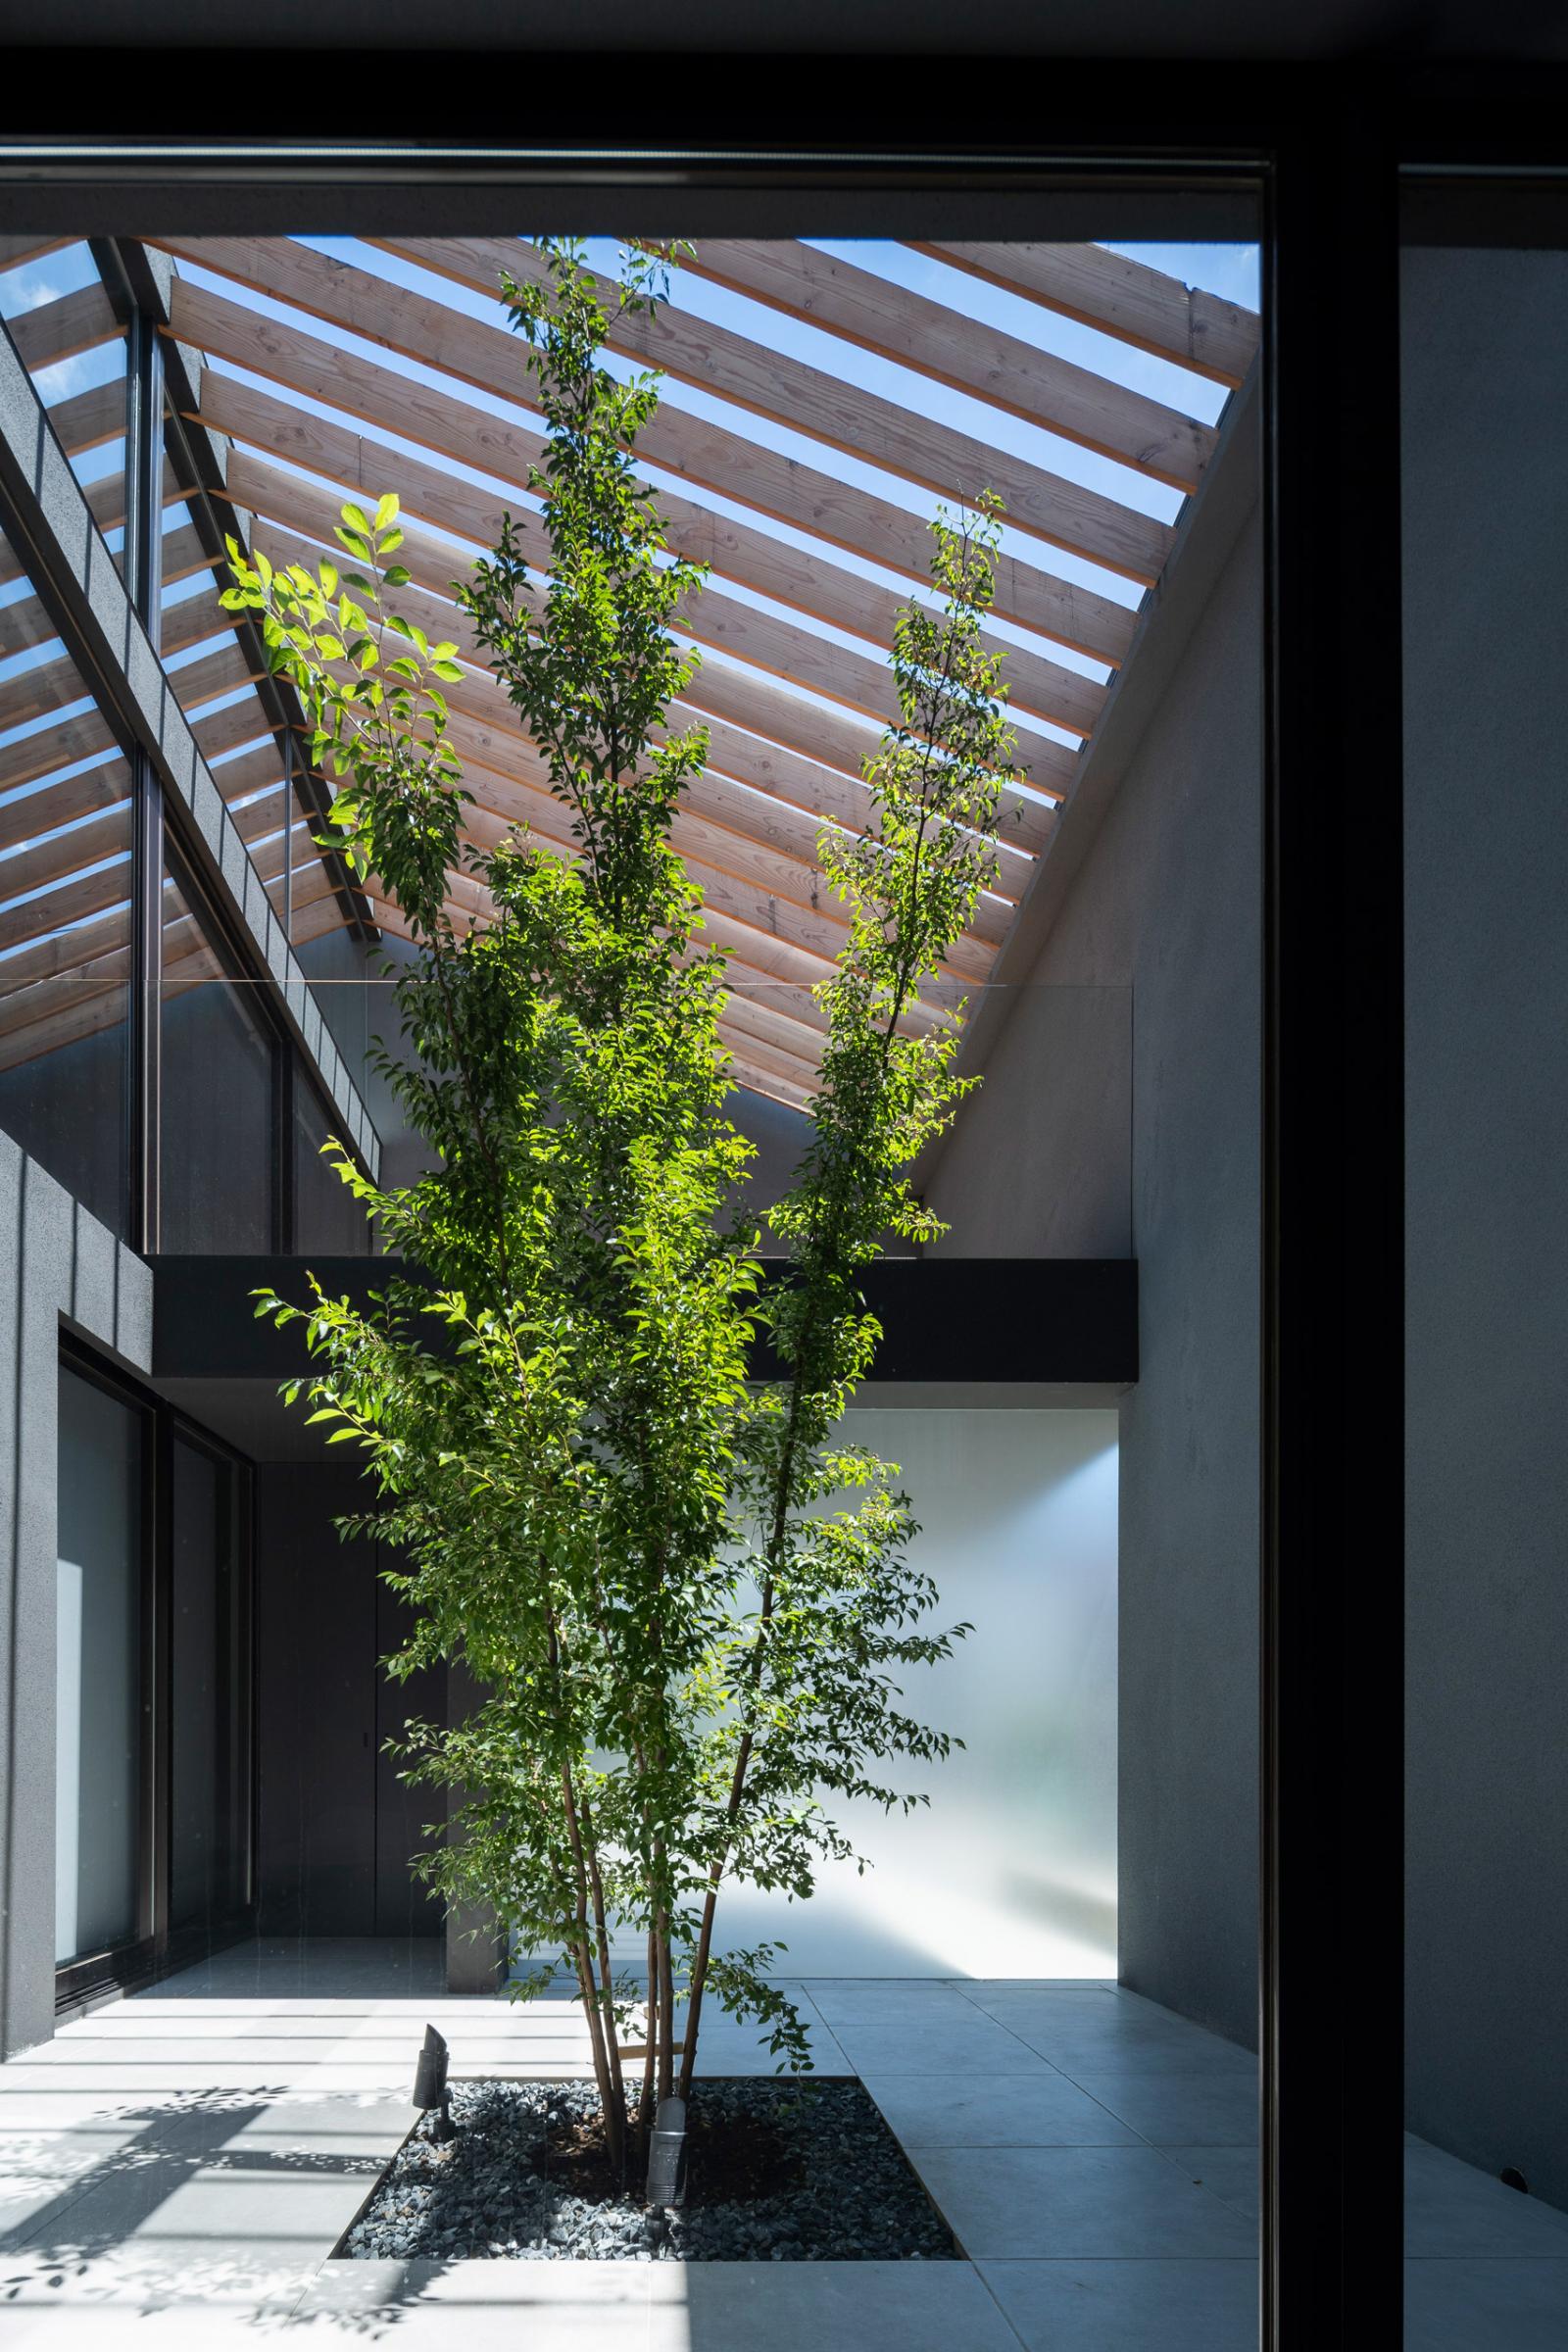 Hình ảnh cận cảnh bồn cây xanh mát ở sân trong ngôi nhà, xung quanh là hệ cửa kính trượt